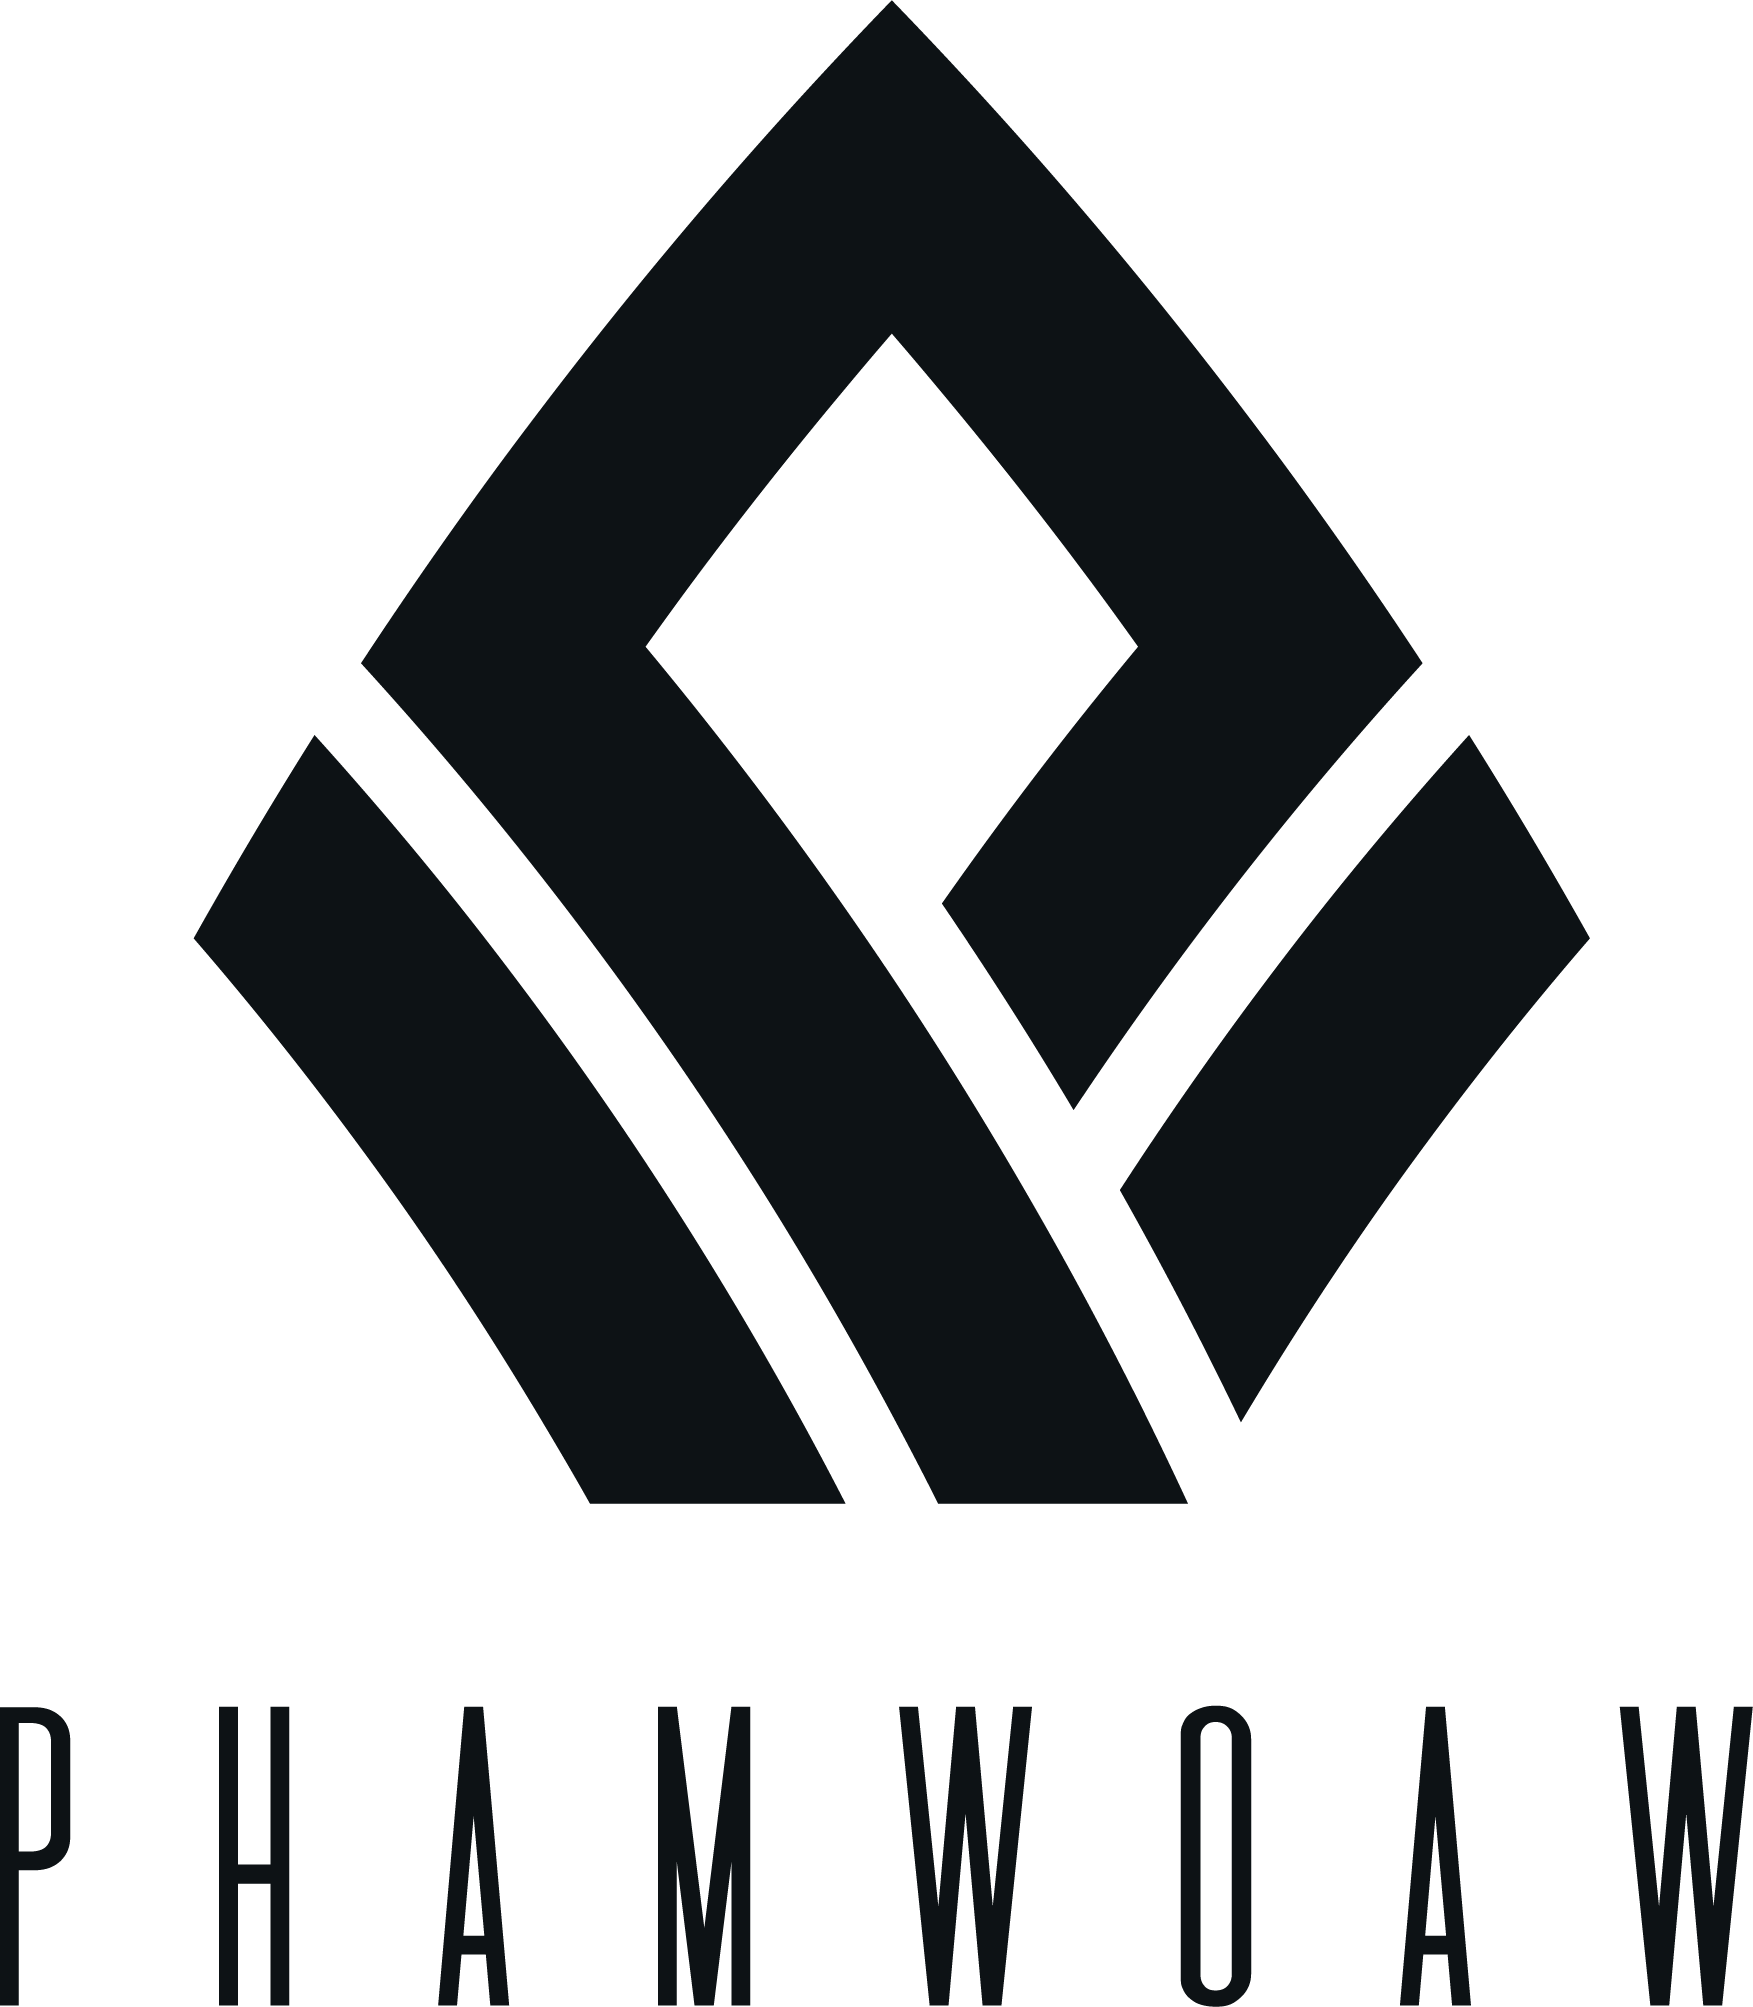 Phamwoaw